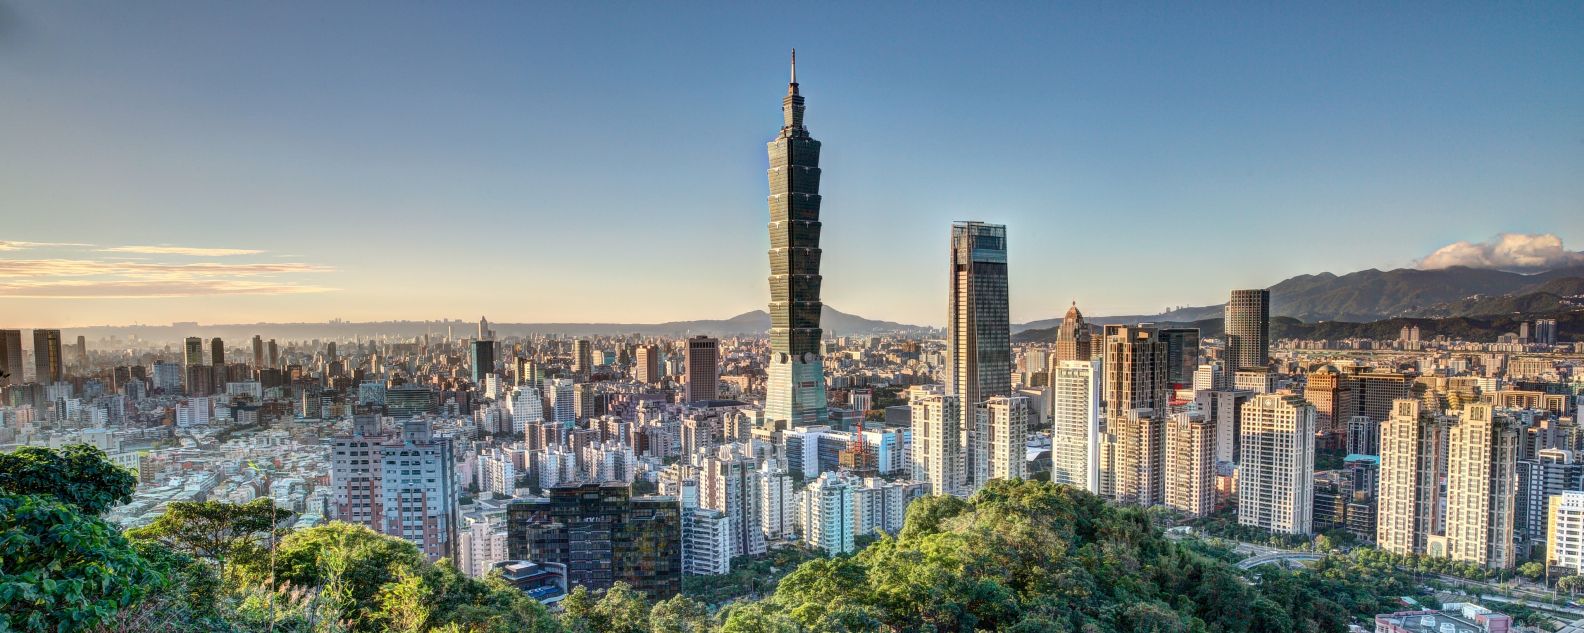 Aerial view of Taipei